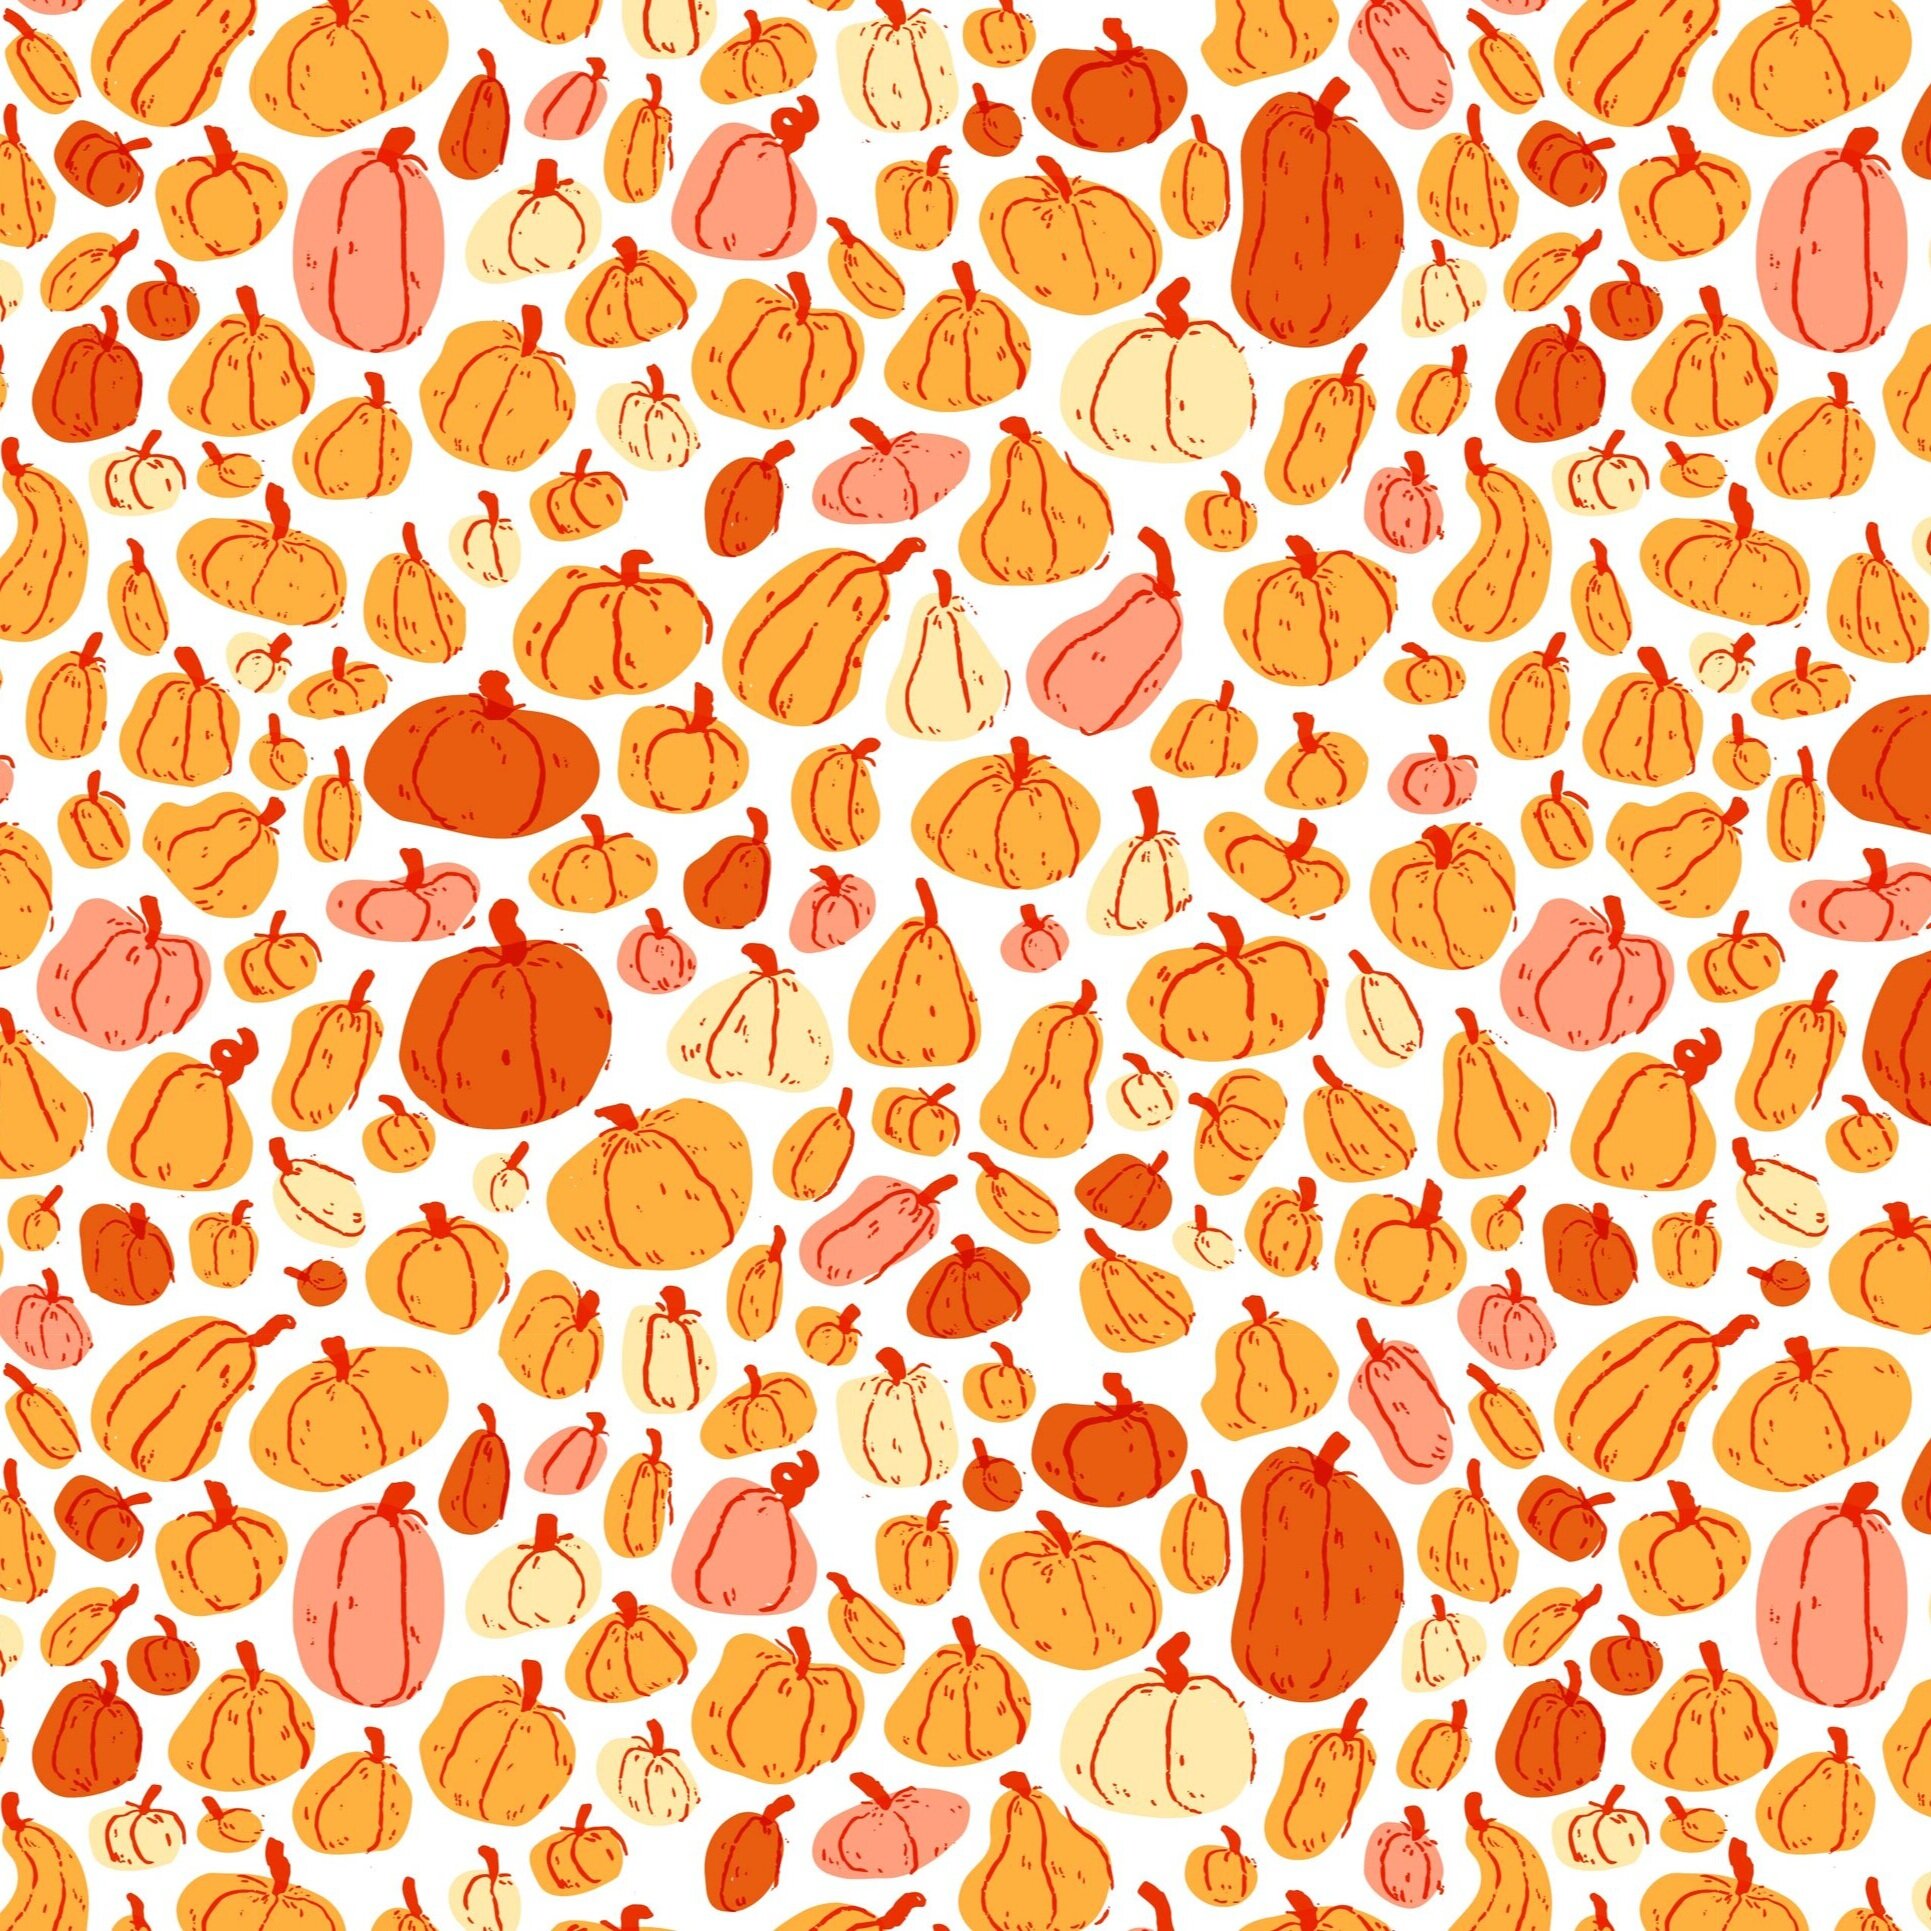 miotke_pumpkins_pattern-03.jpg